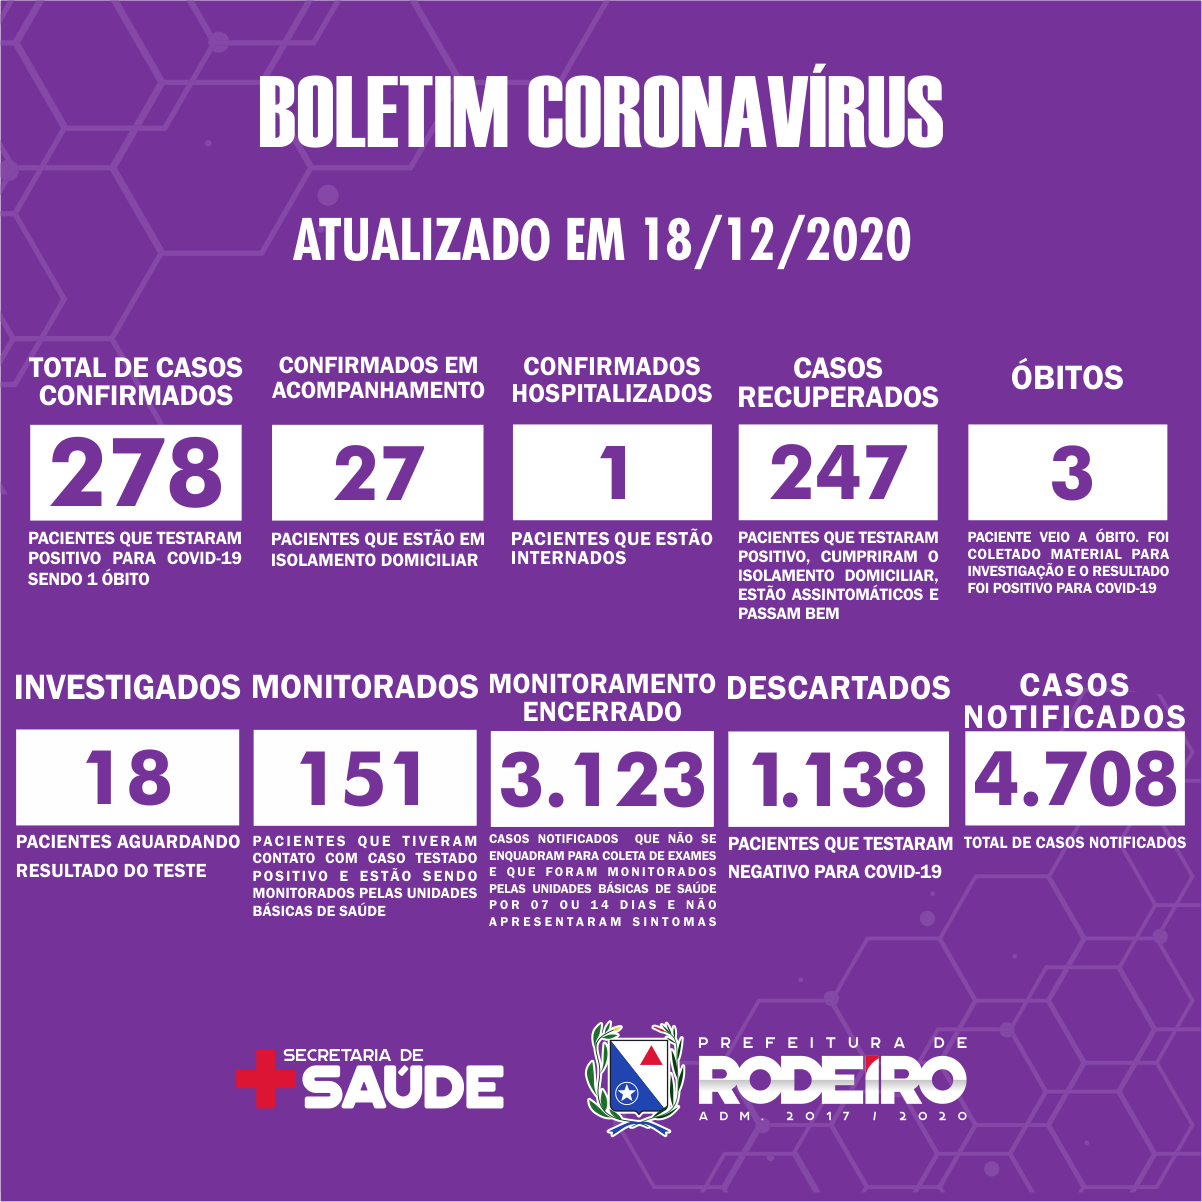 Boletim Epidemiológico do Município de Rodeiro sobre coronavírus, atualizado em 18/12/2020